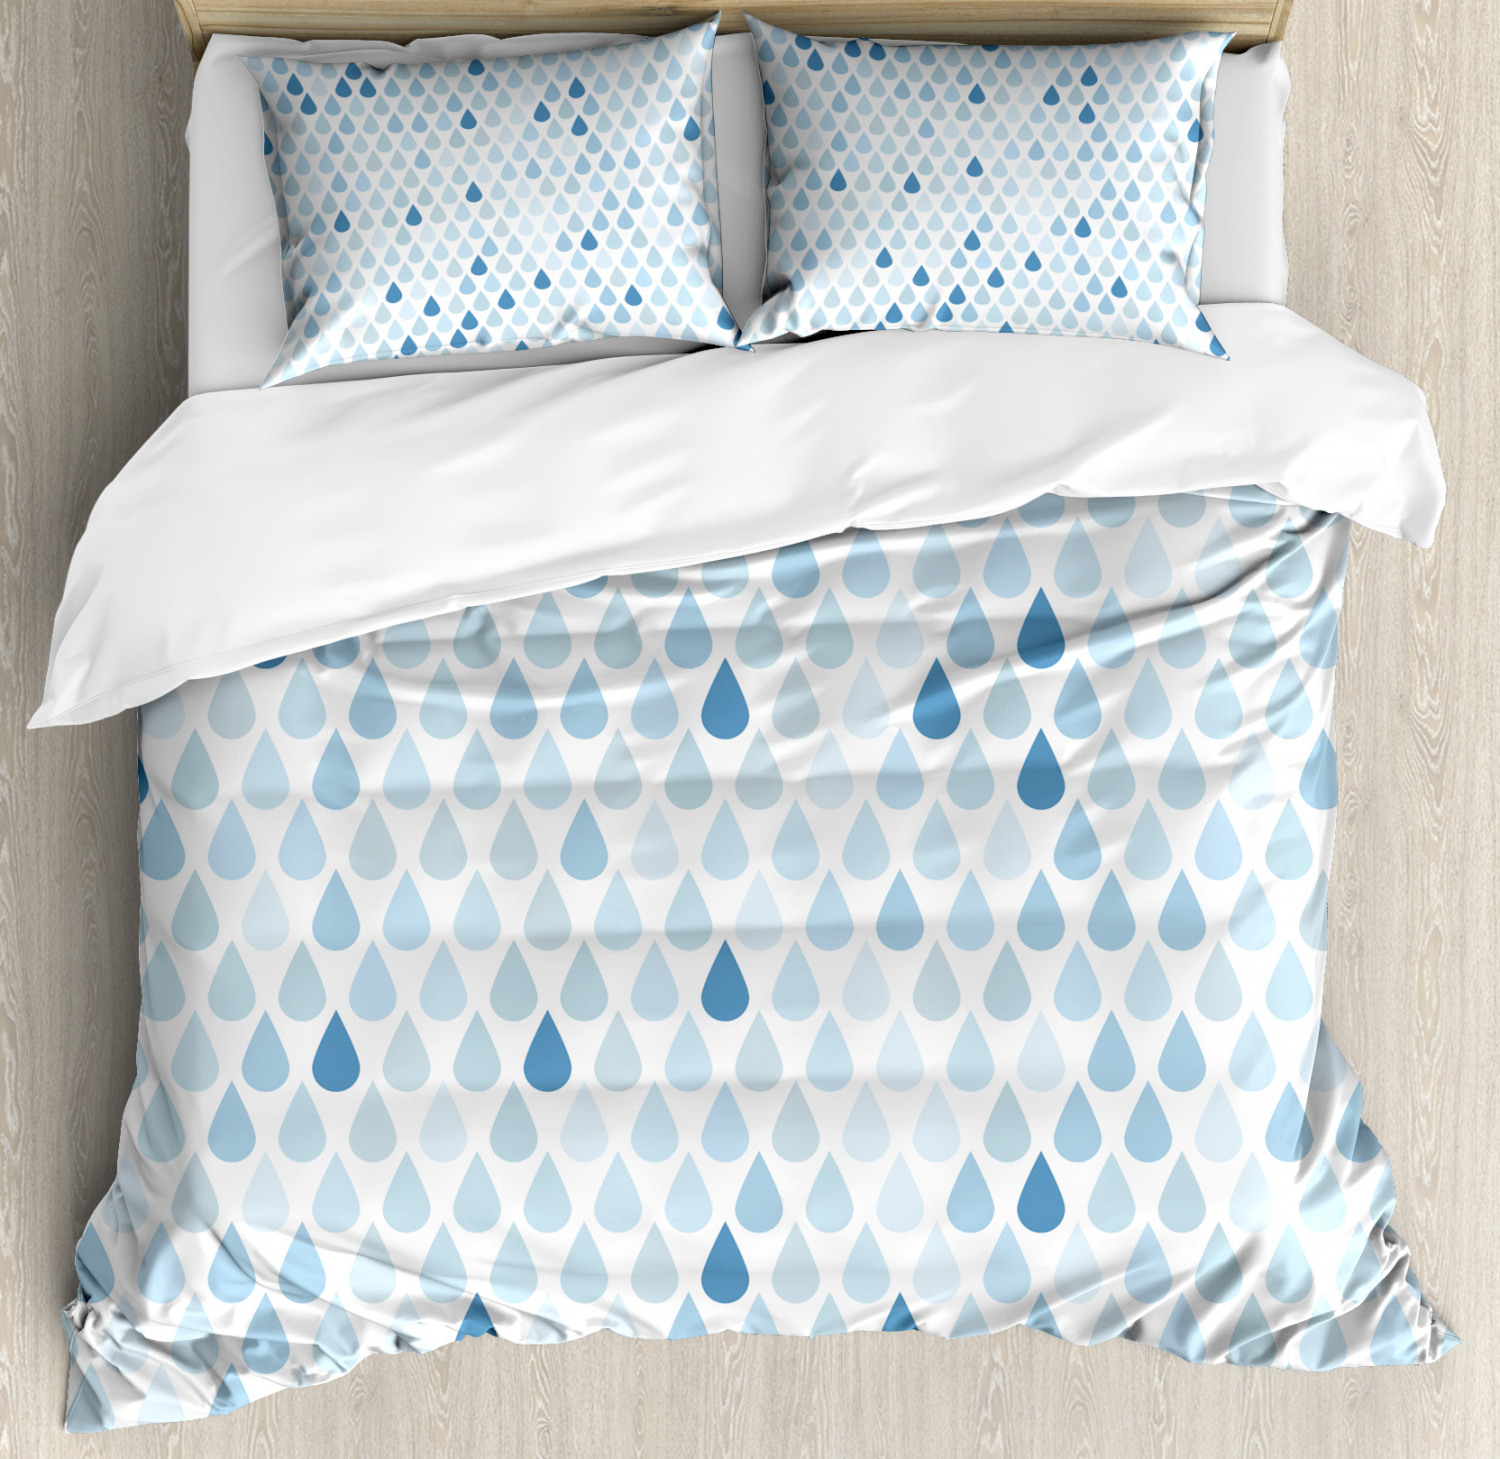 Blue Duvet Cover Set With Pillow Shams Raindrops White Navy Print